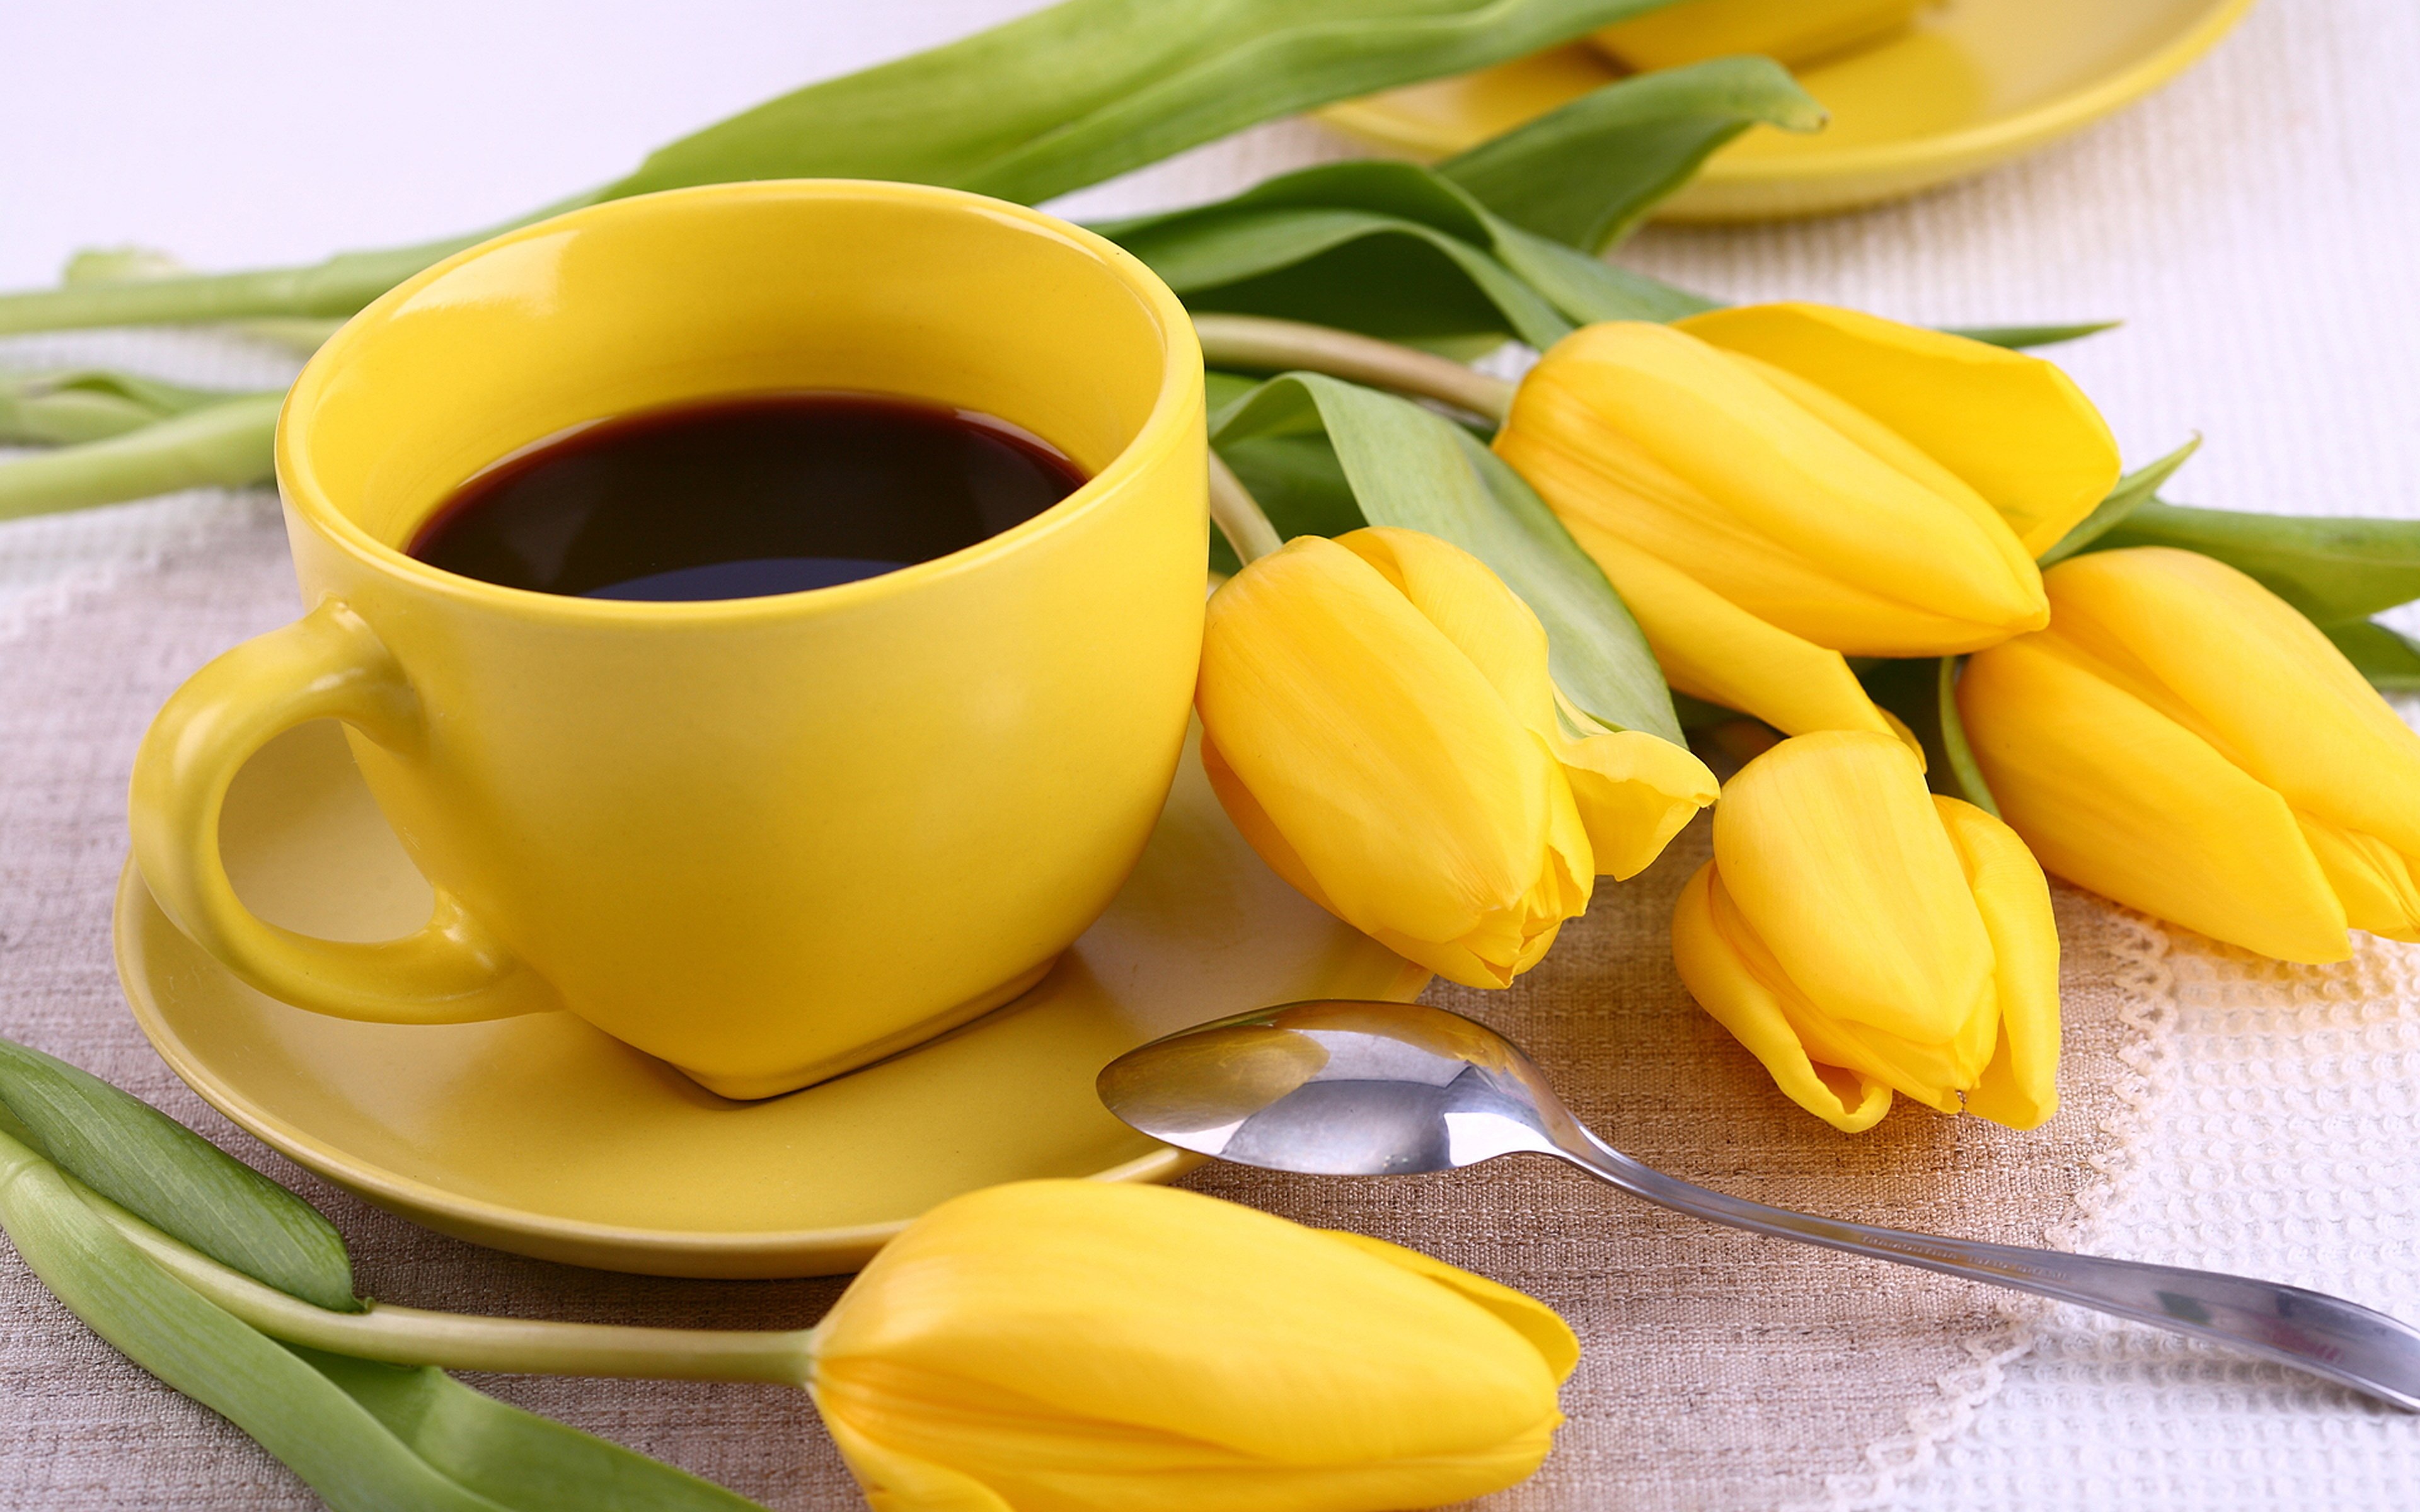 Доброе весеннее утро с тюльпанами. Доброе утро тюльпаны и кофе. Желтые тюльпаны и кофе. Желтые тюльпаны. Доброго весеннего утра и хорошего настроения.